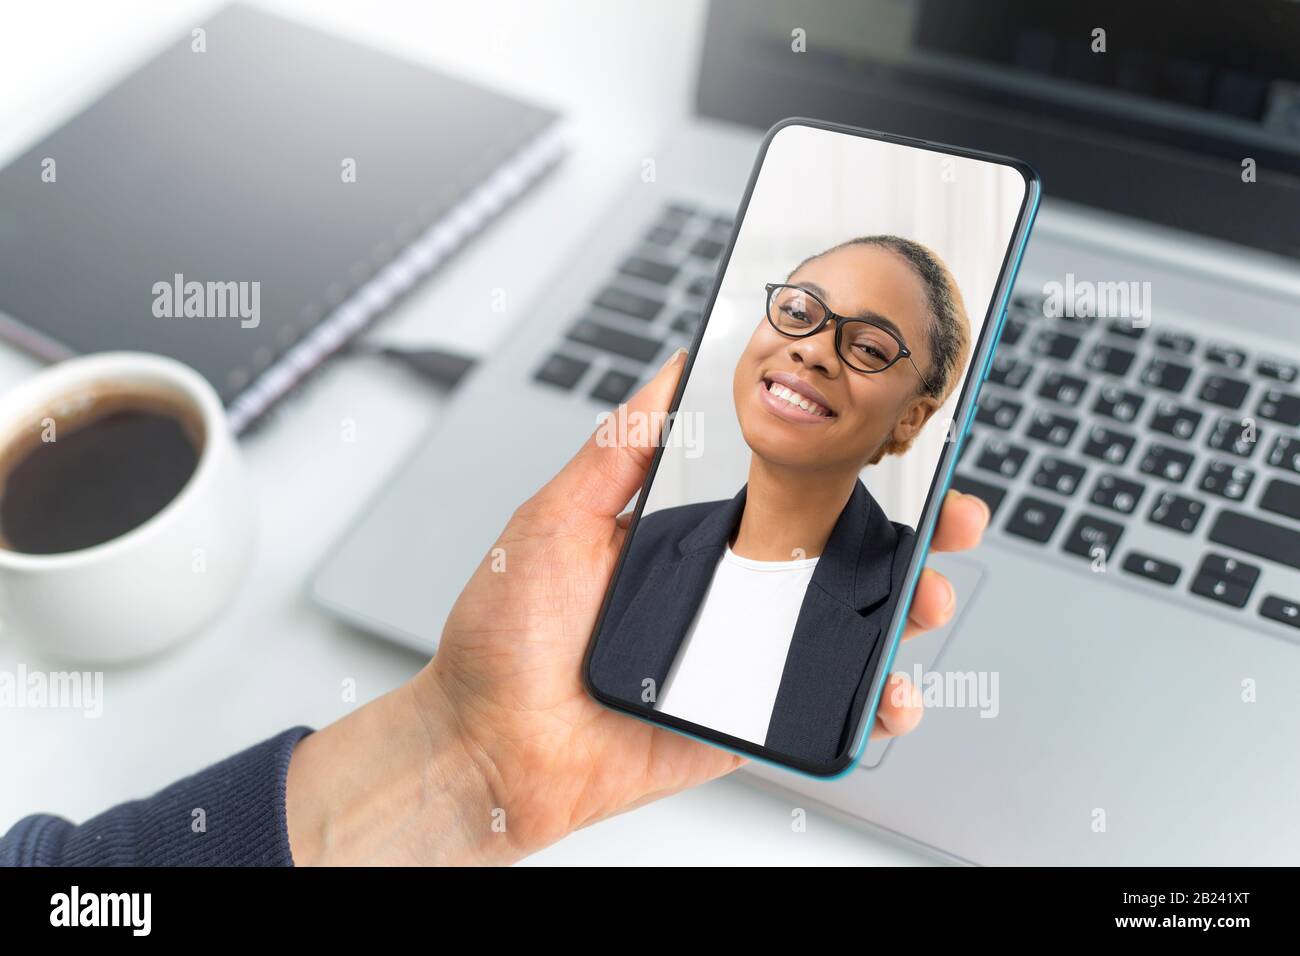 Appel vidéo en ligne via smartphone. Consultation d'affaires avec une femme africaine discutant sur écran de téléphone mobile. Banque D'Images